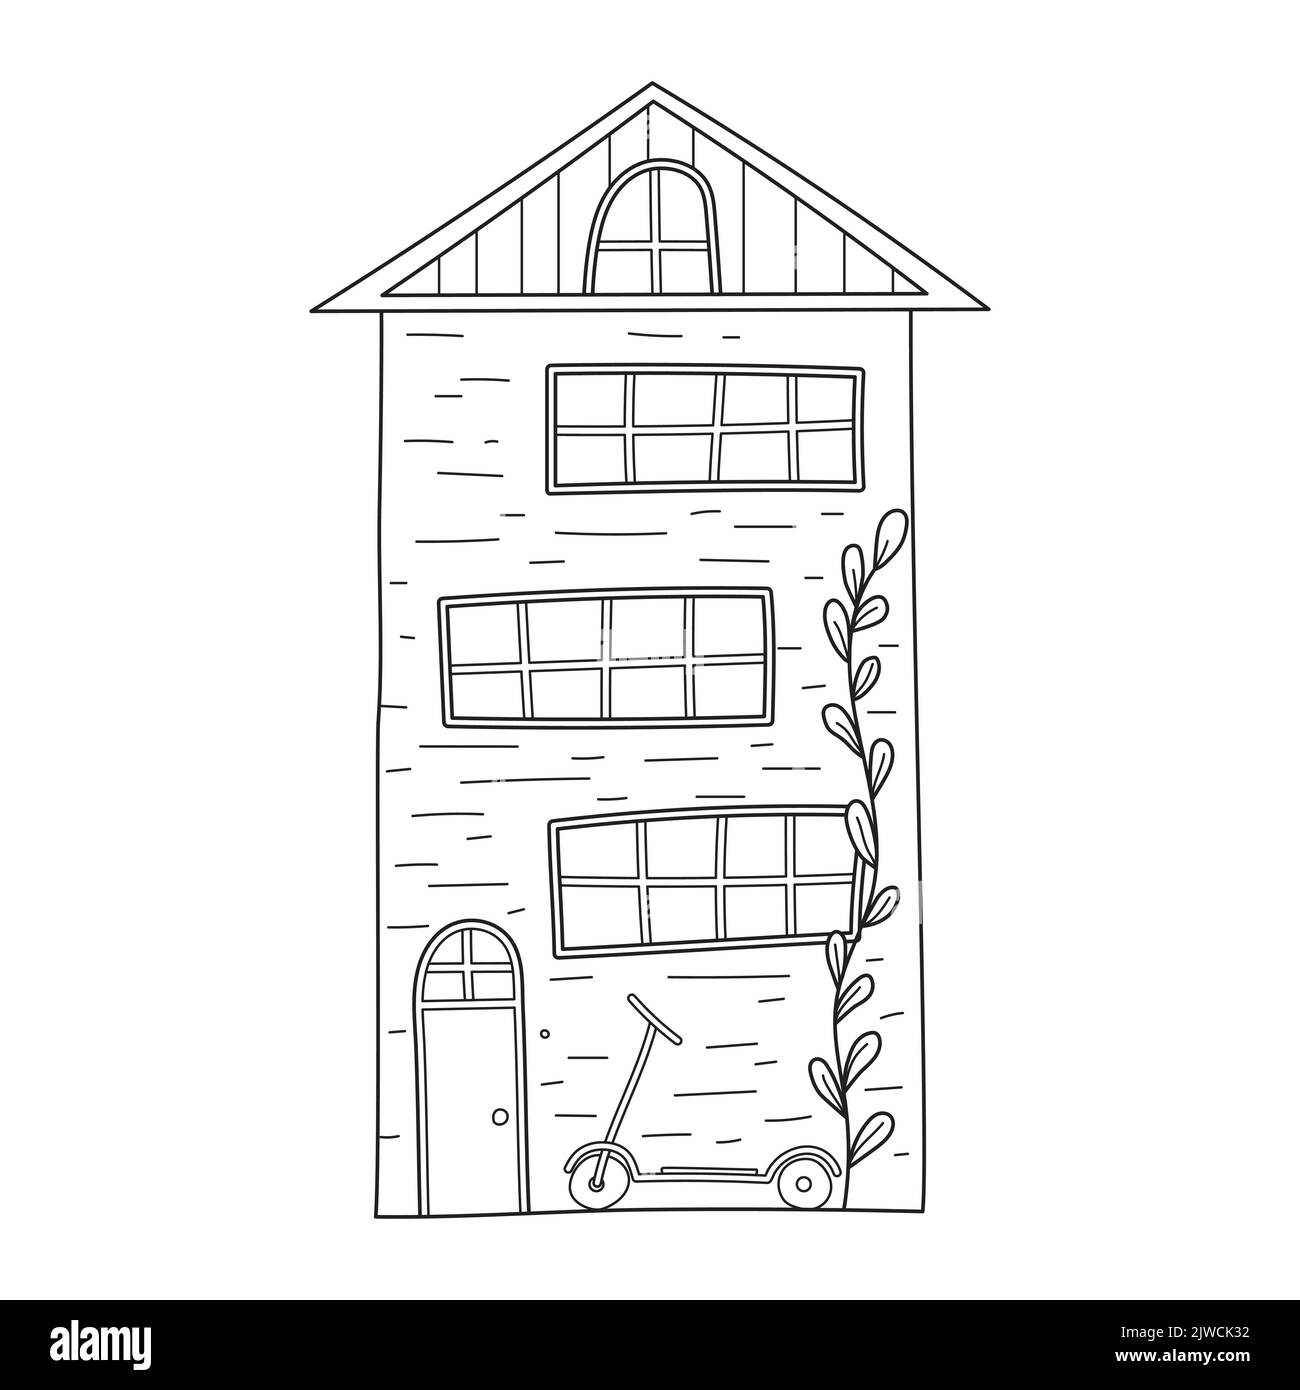 Carino semplice a tre piani casa e scooter in stile bozzetto. Illustrazione vettoriale in bianco e nero disegnata a mano isolata su sfondo bianco Illustrazione Vettoriale